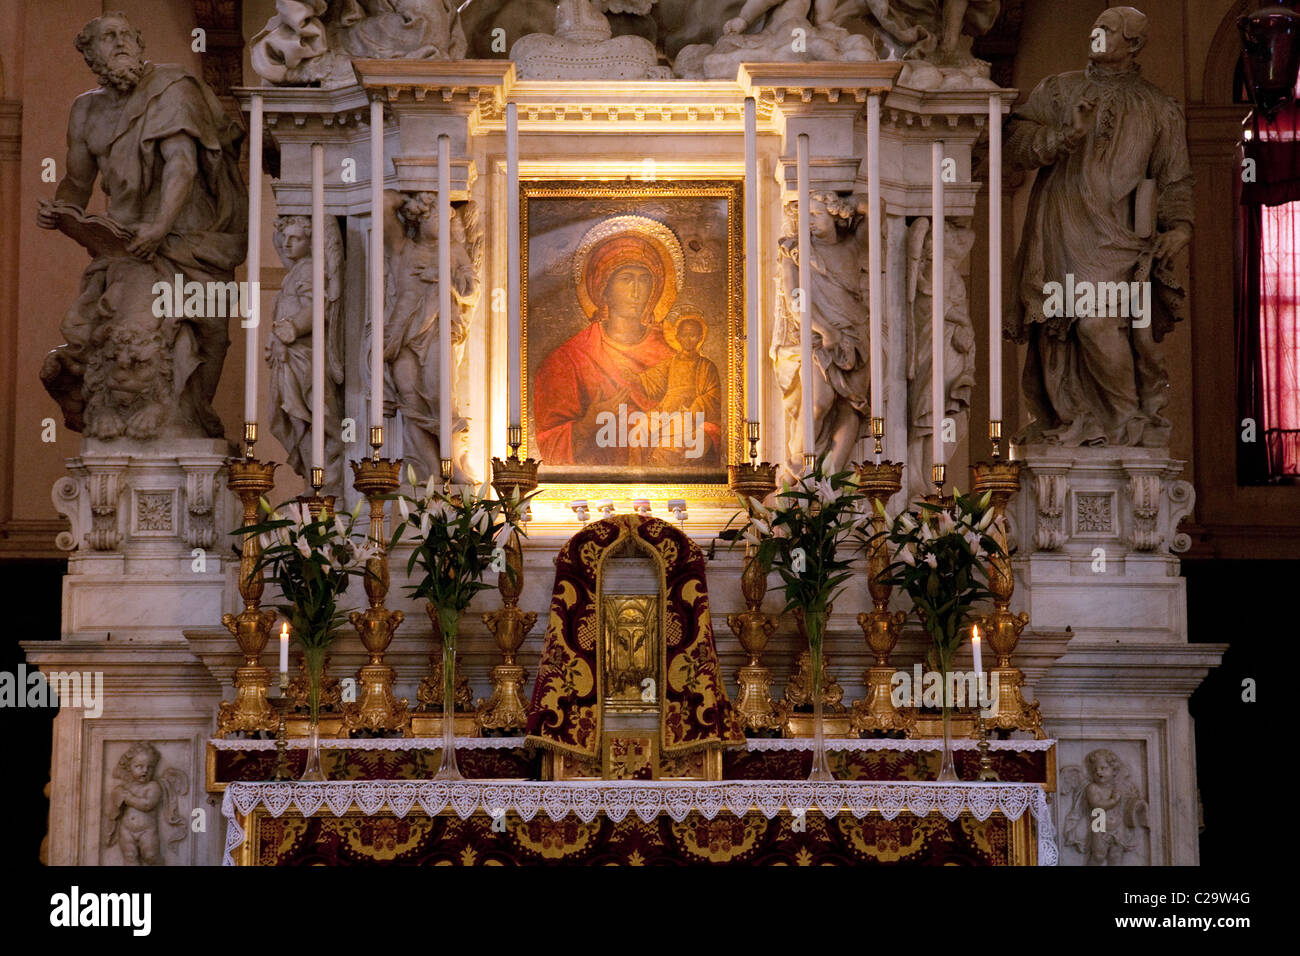 L'autel à l'intérieur de l'église de Santa Maria della Salute, Venise, Italie Banque D'Images